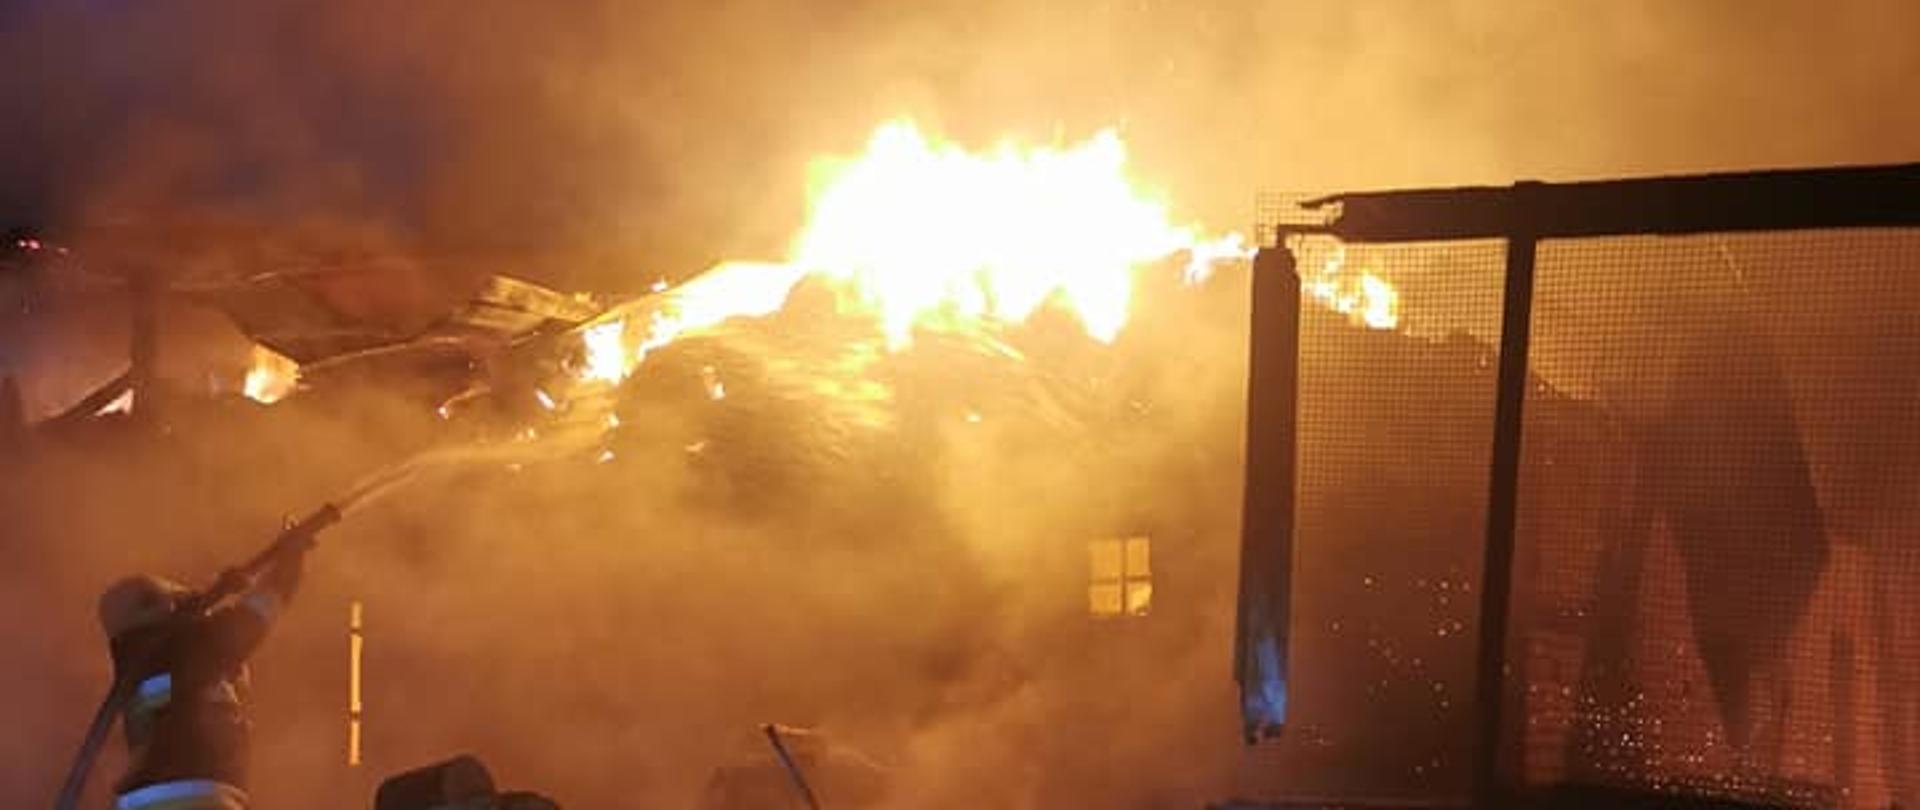 Zdjęcie przedstawia strażaka podejmującego działania gaśnicze na objęte pożarem zabudowania gospodarcze